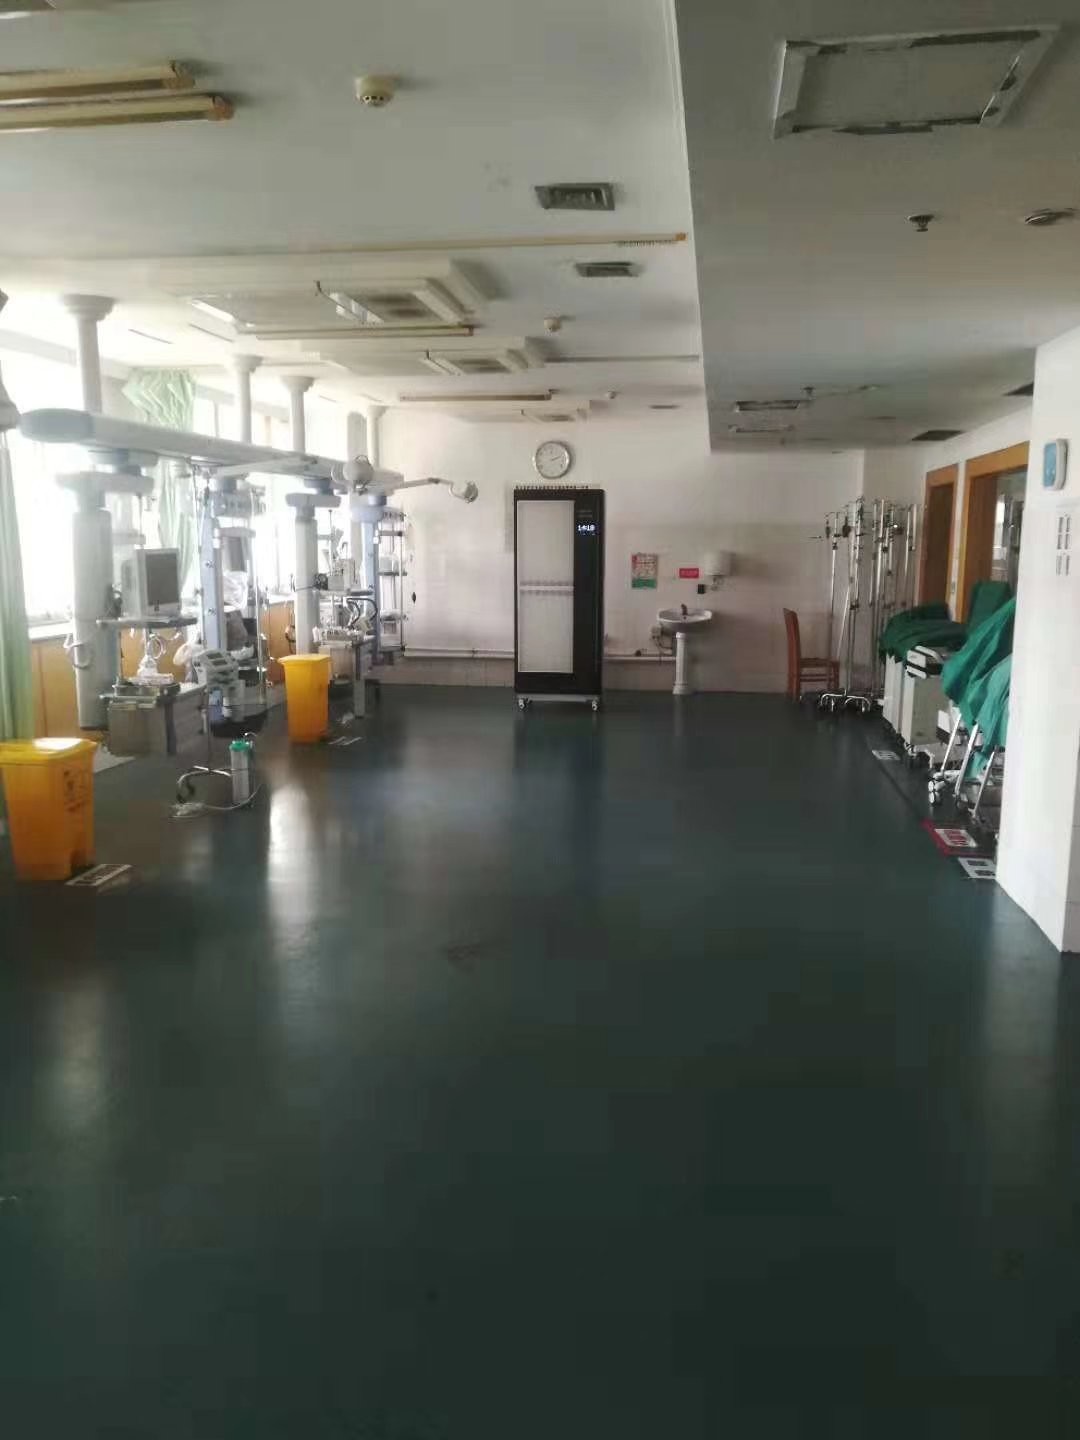 Laatste bedrijfscasus over Het Ziekenhuis van Zhucheng City People